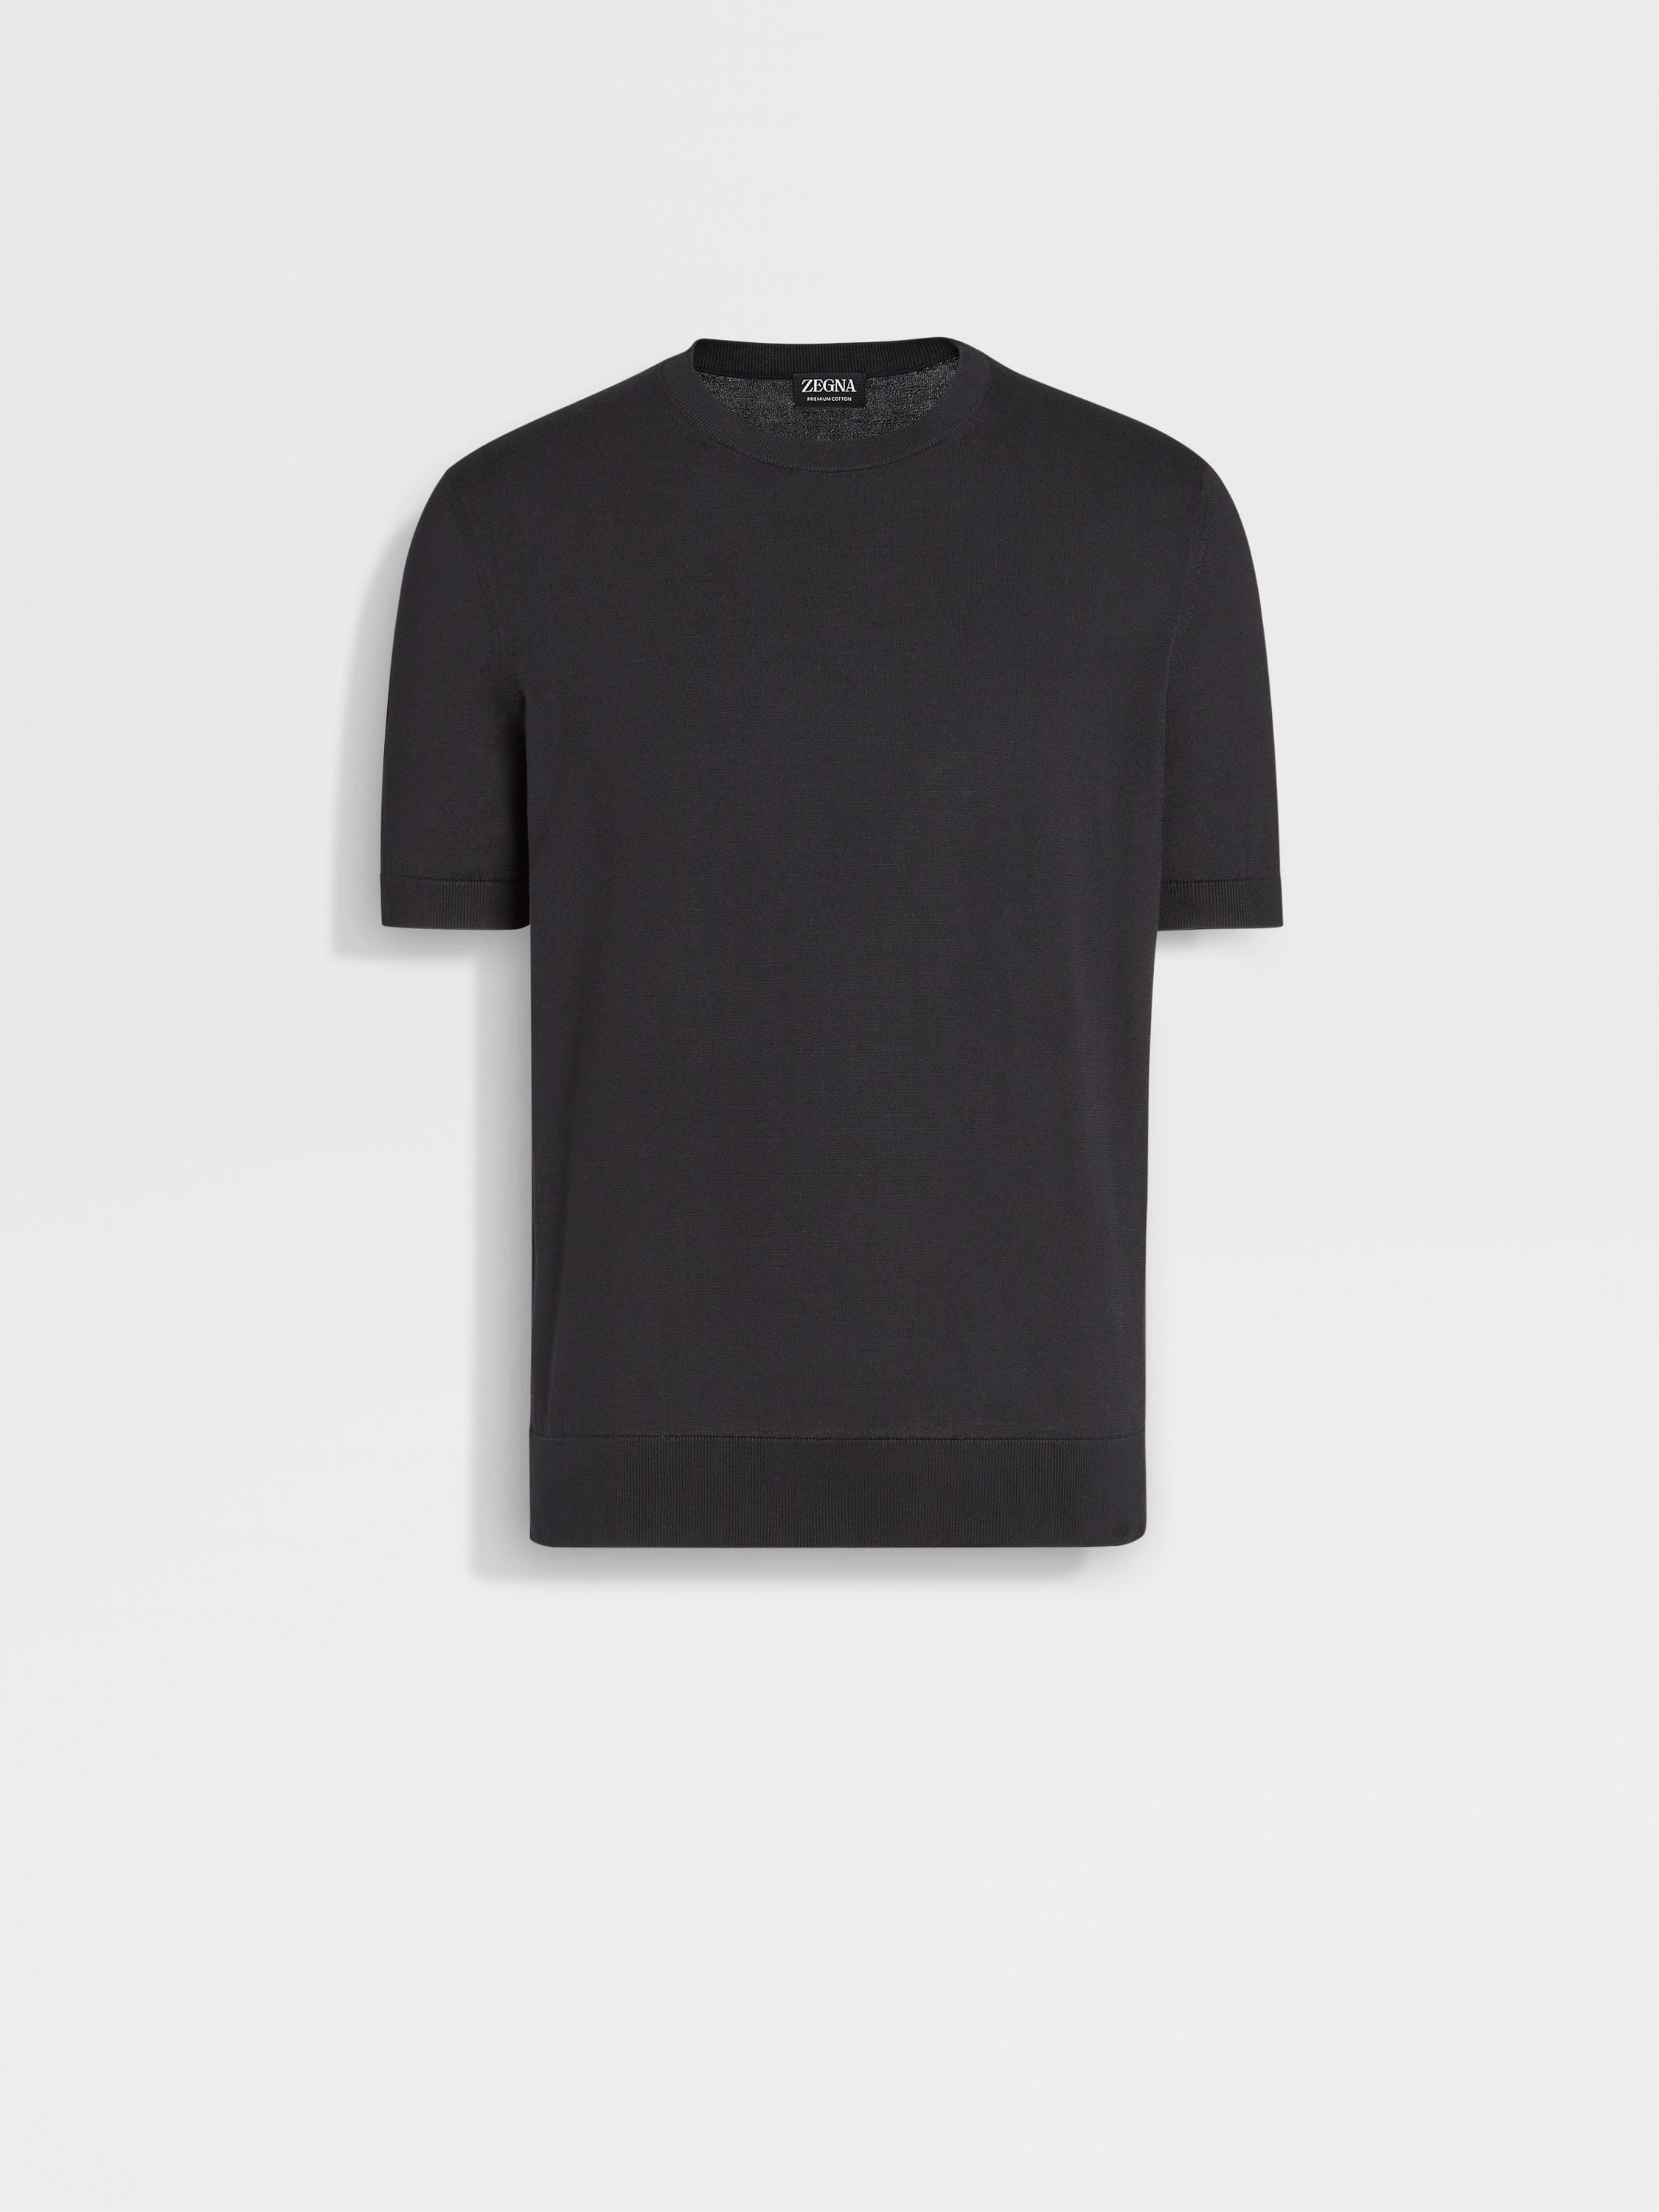 ブラック Premium Cotton Tシャツ SS24 29606229 | Zegna JP